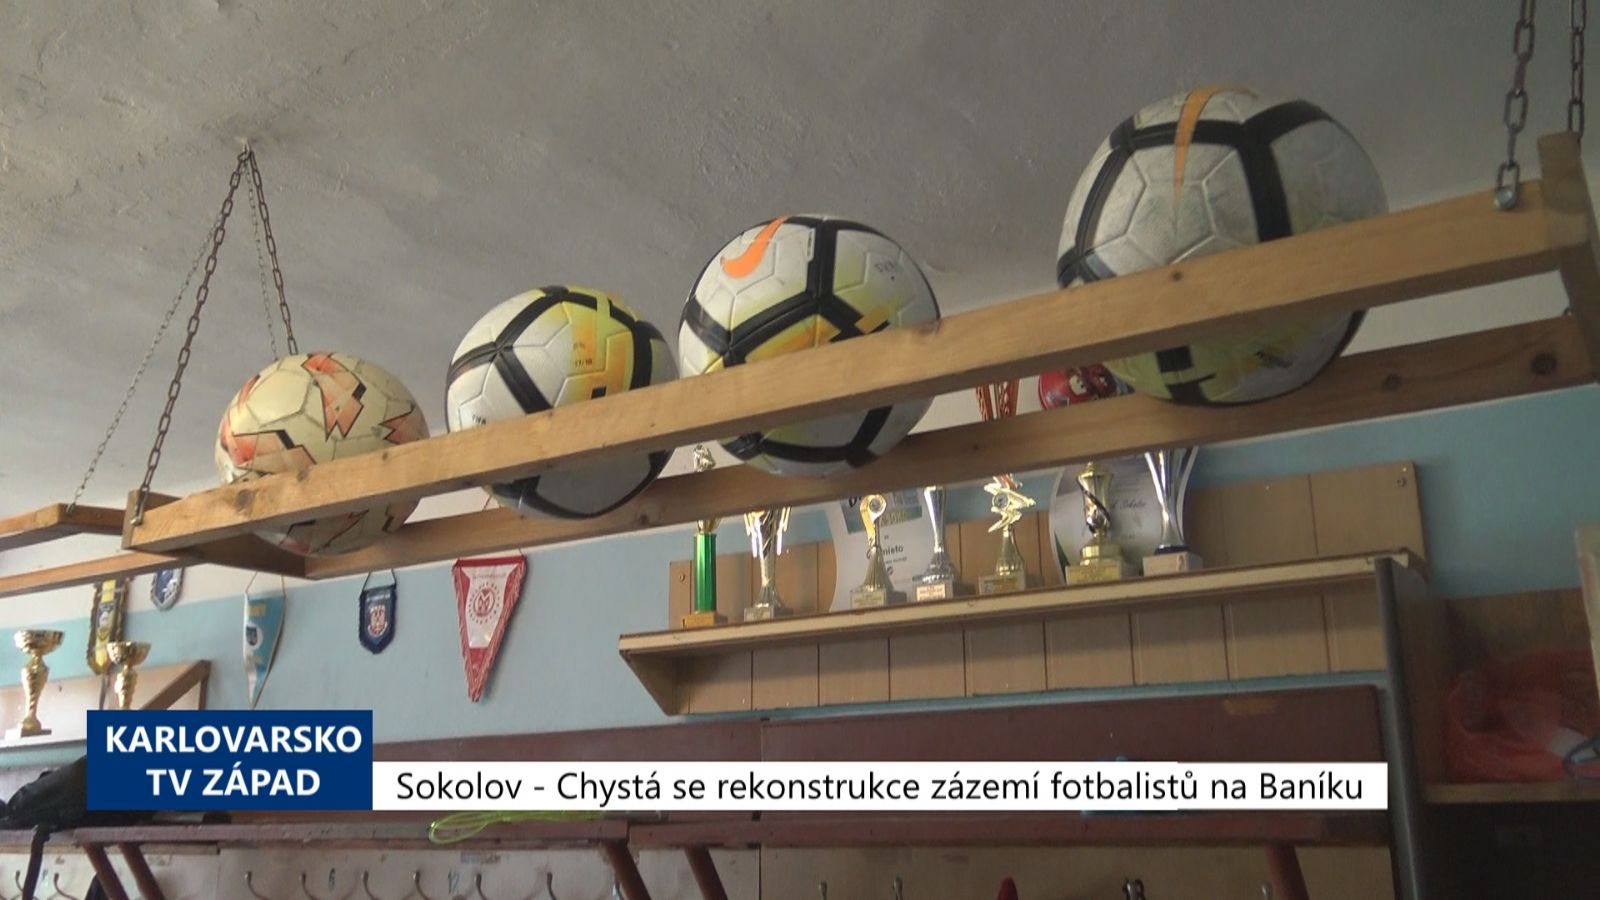 Sokolov: Chystá se rekonstrukce zázemí fotbalistů na Baníku (TV Západ)